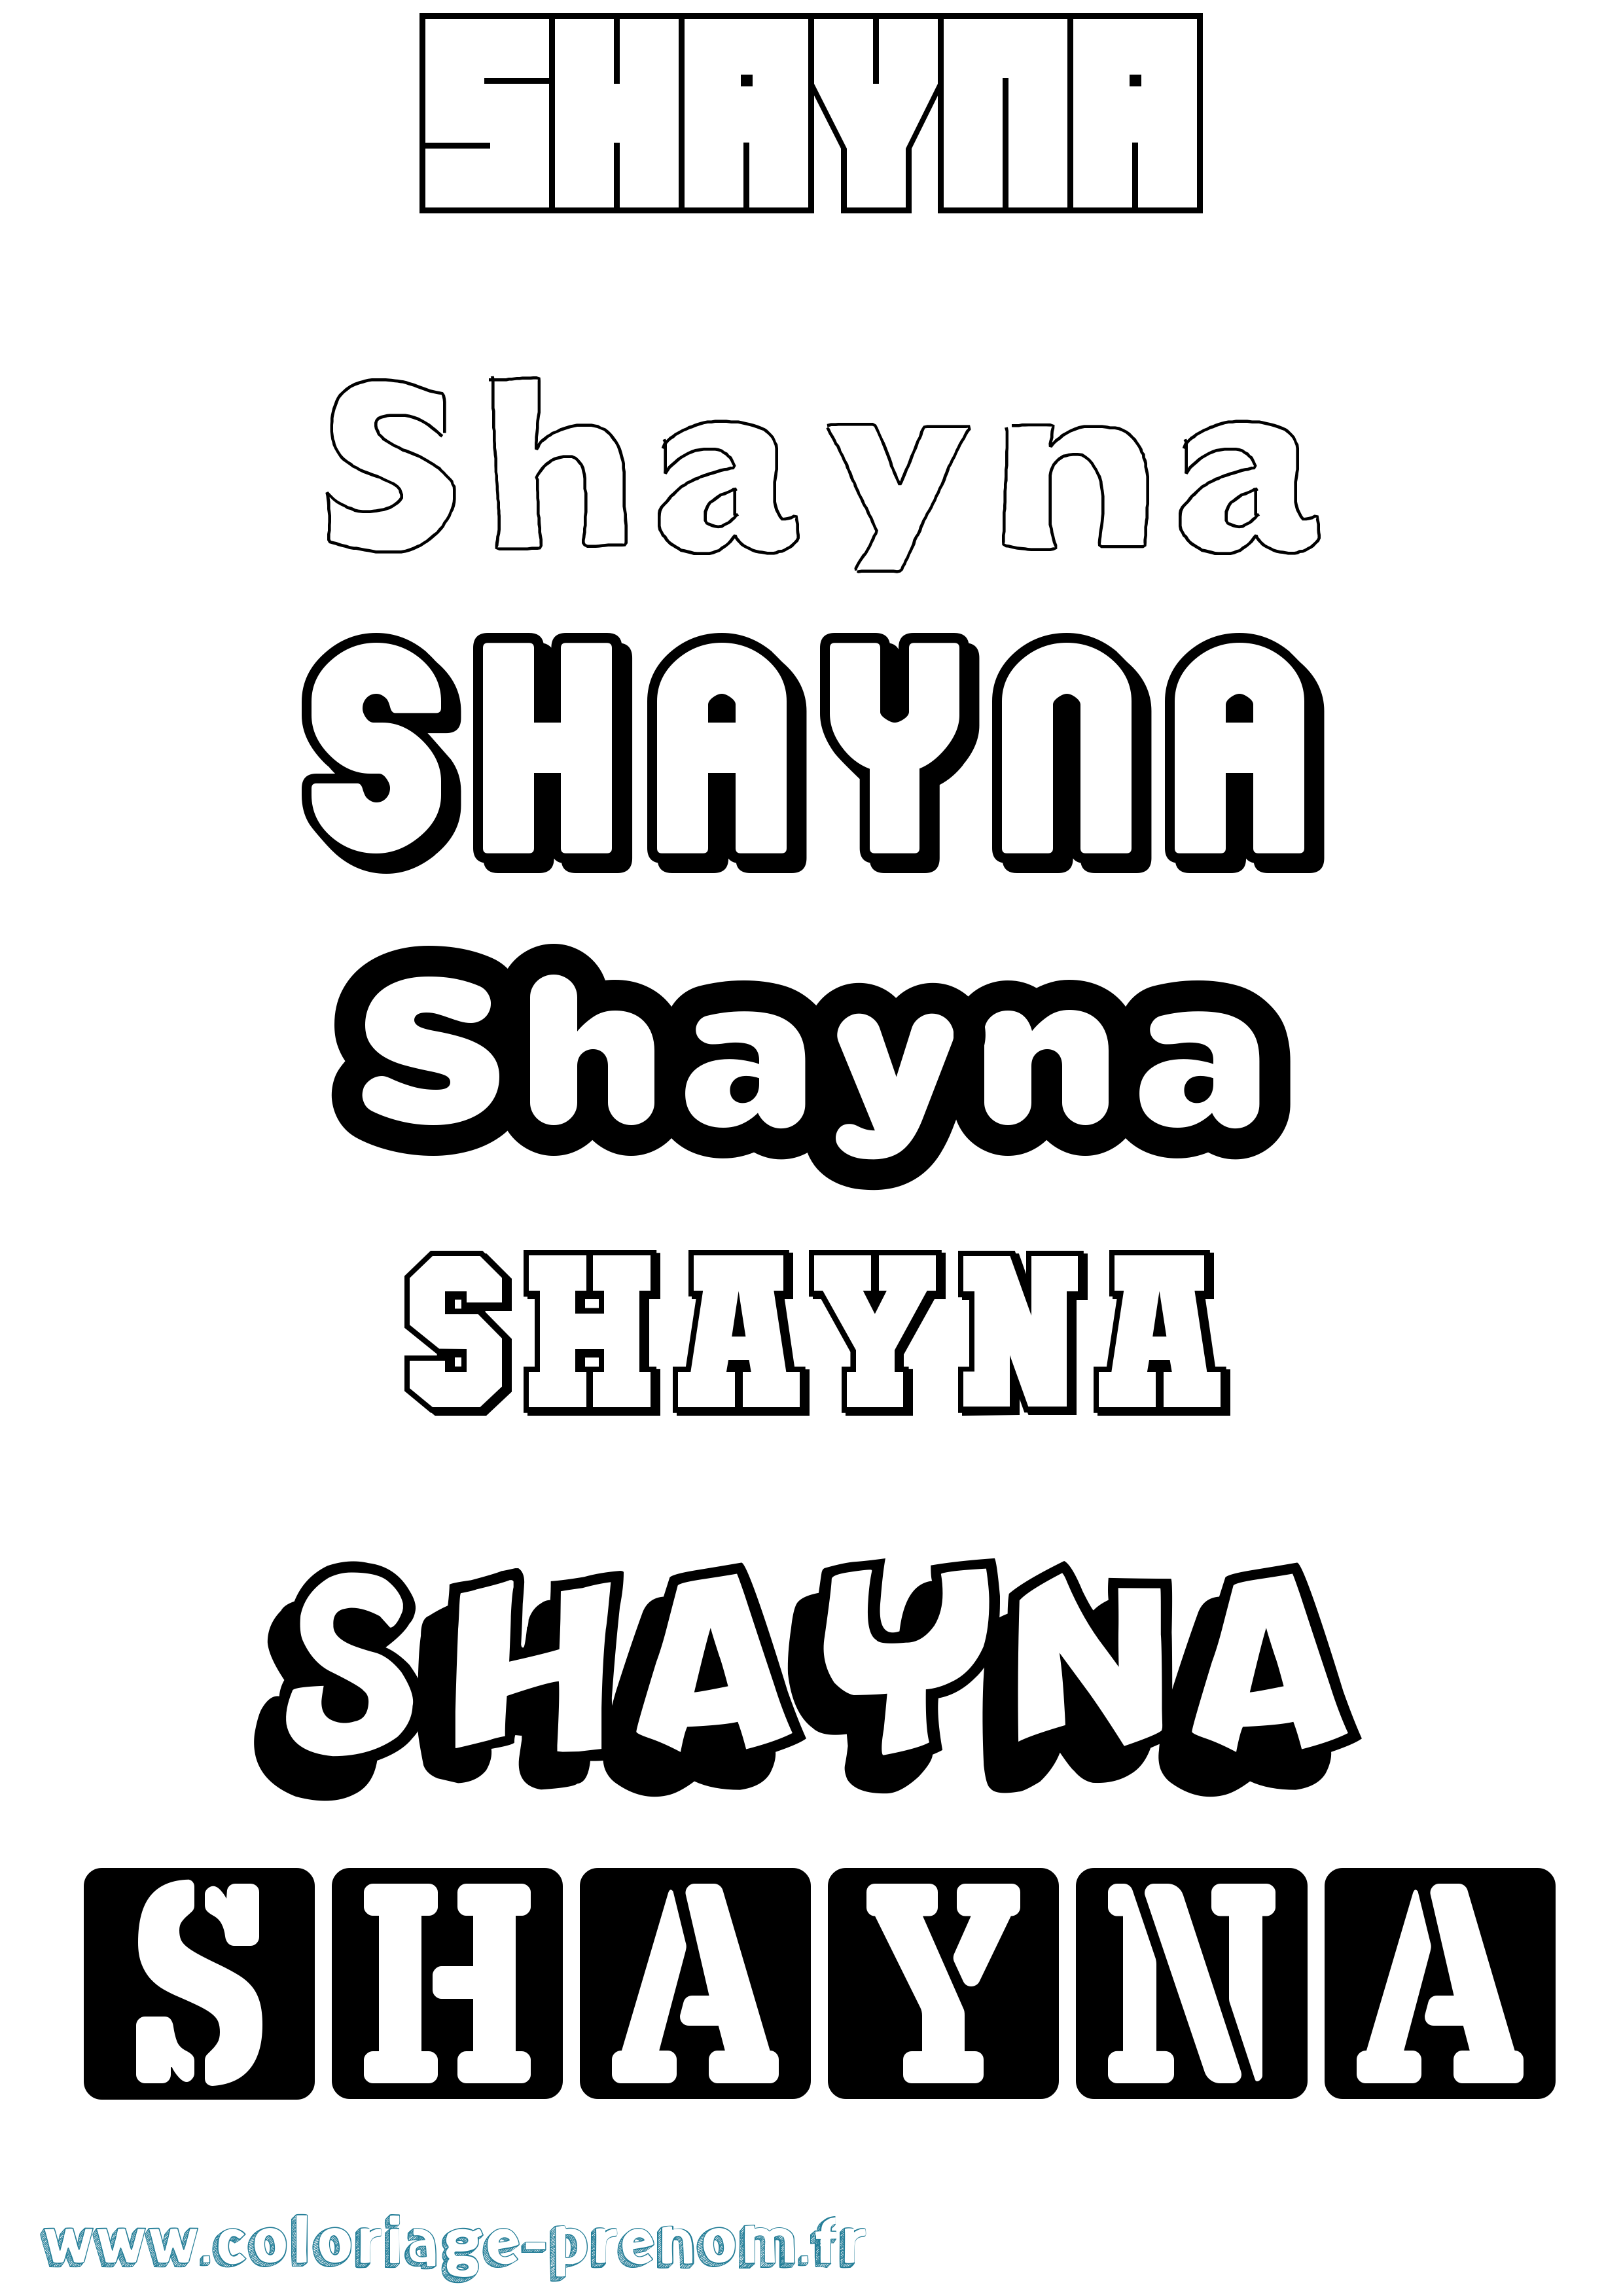 Coloriage prénom Shayna